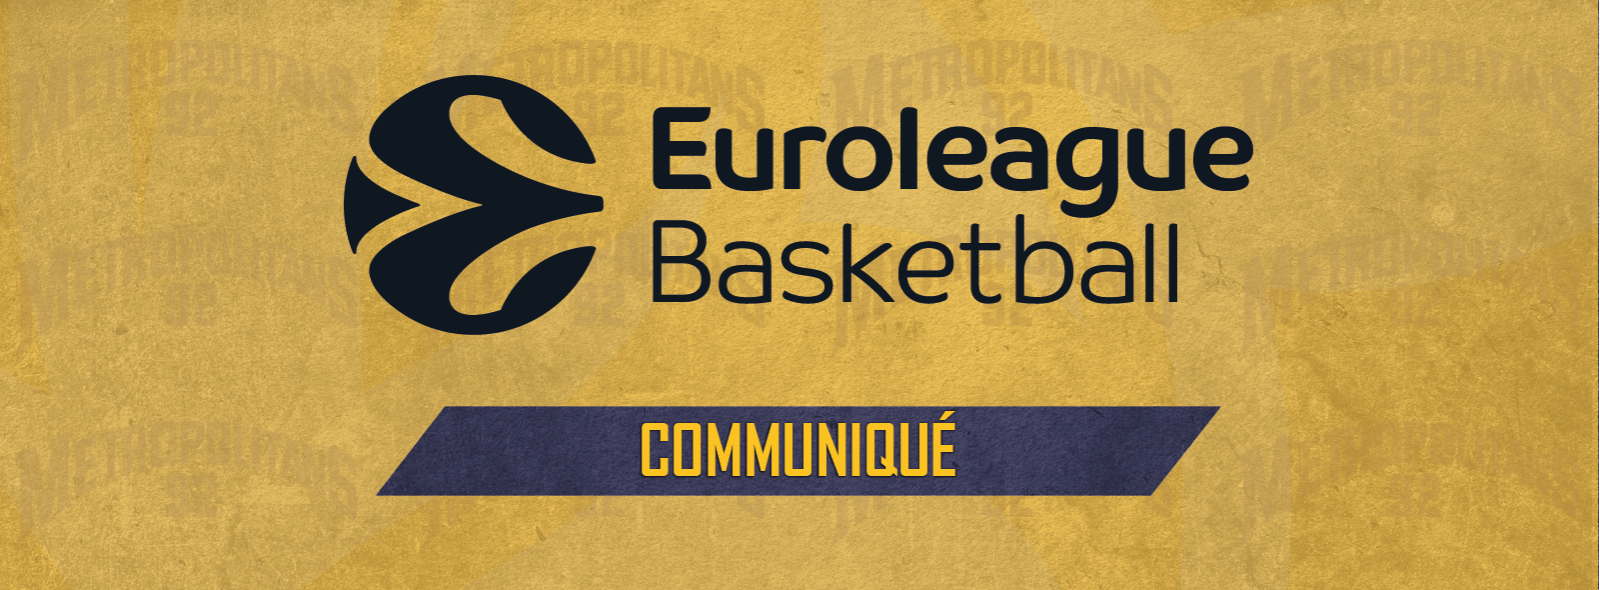 Communiqué EuroLeague Basketball